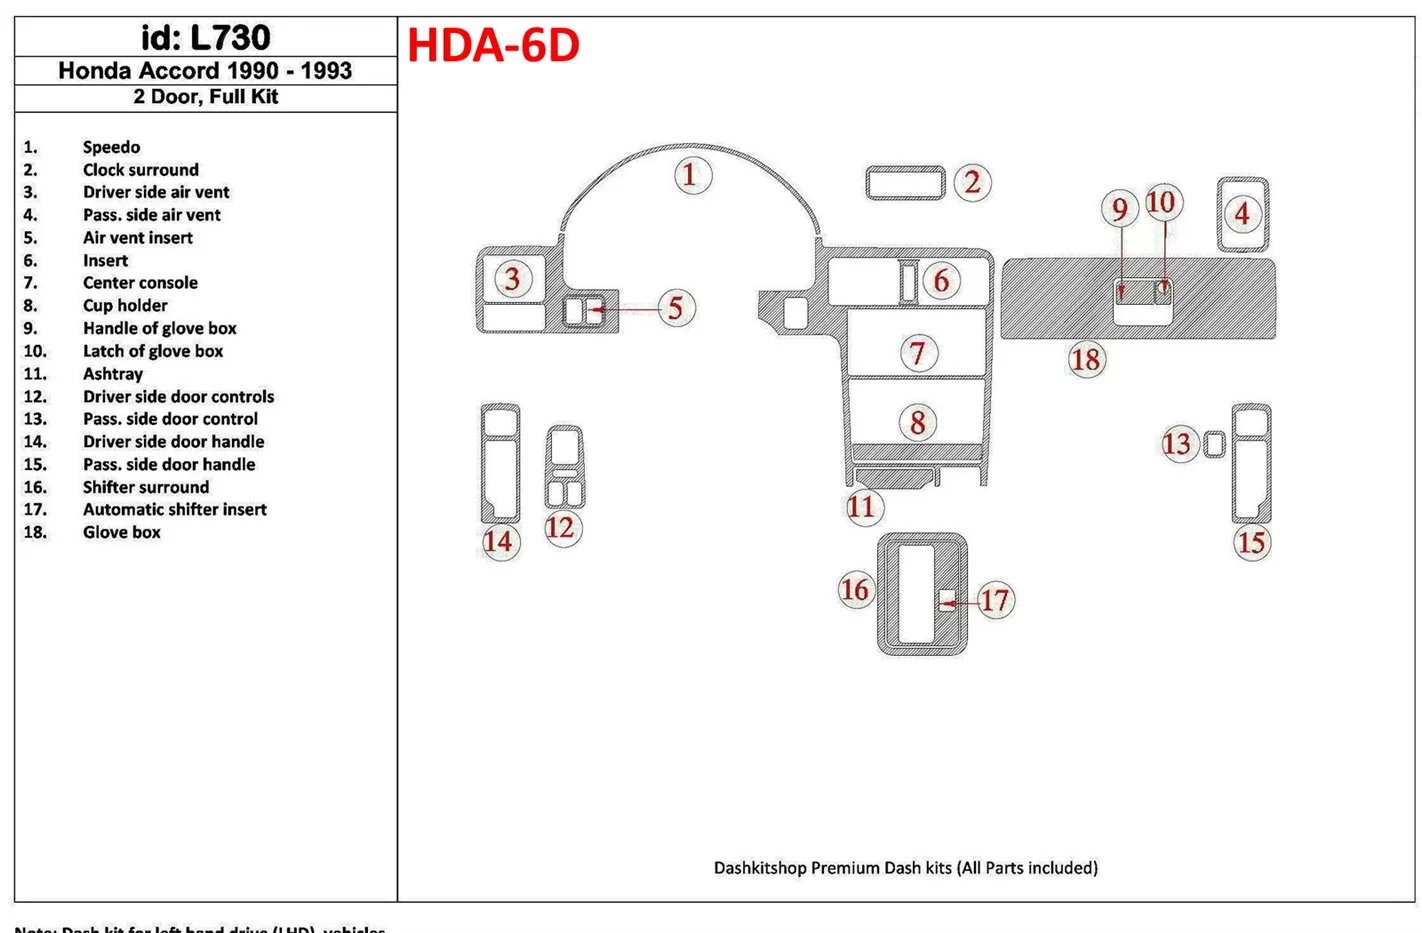 Honda Accord 1990-1993 2 Des portes, Ensemble Complet, 18 Parts set BD Kit la décoration du tableau de bord - 1 - habillage deco